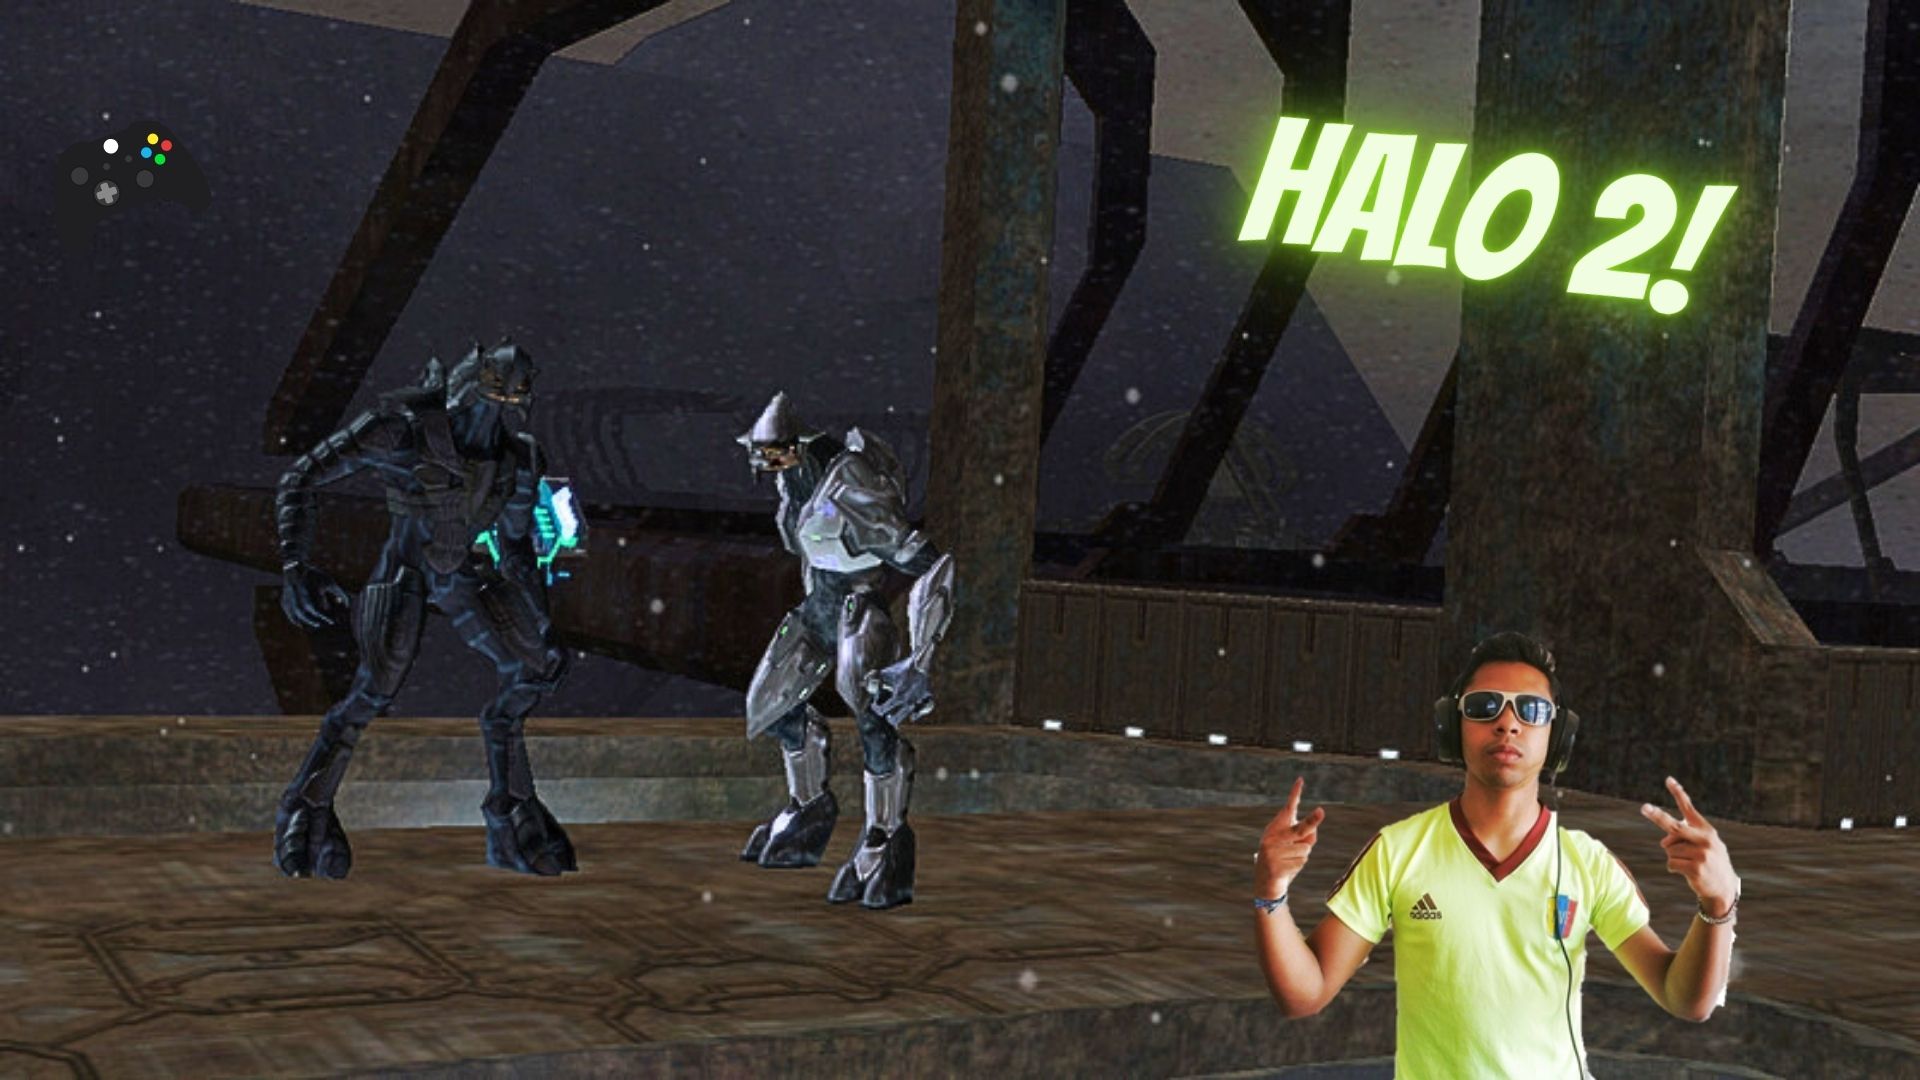 Halo 2!.jpg